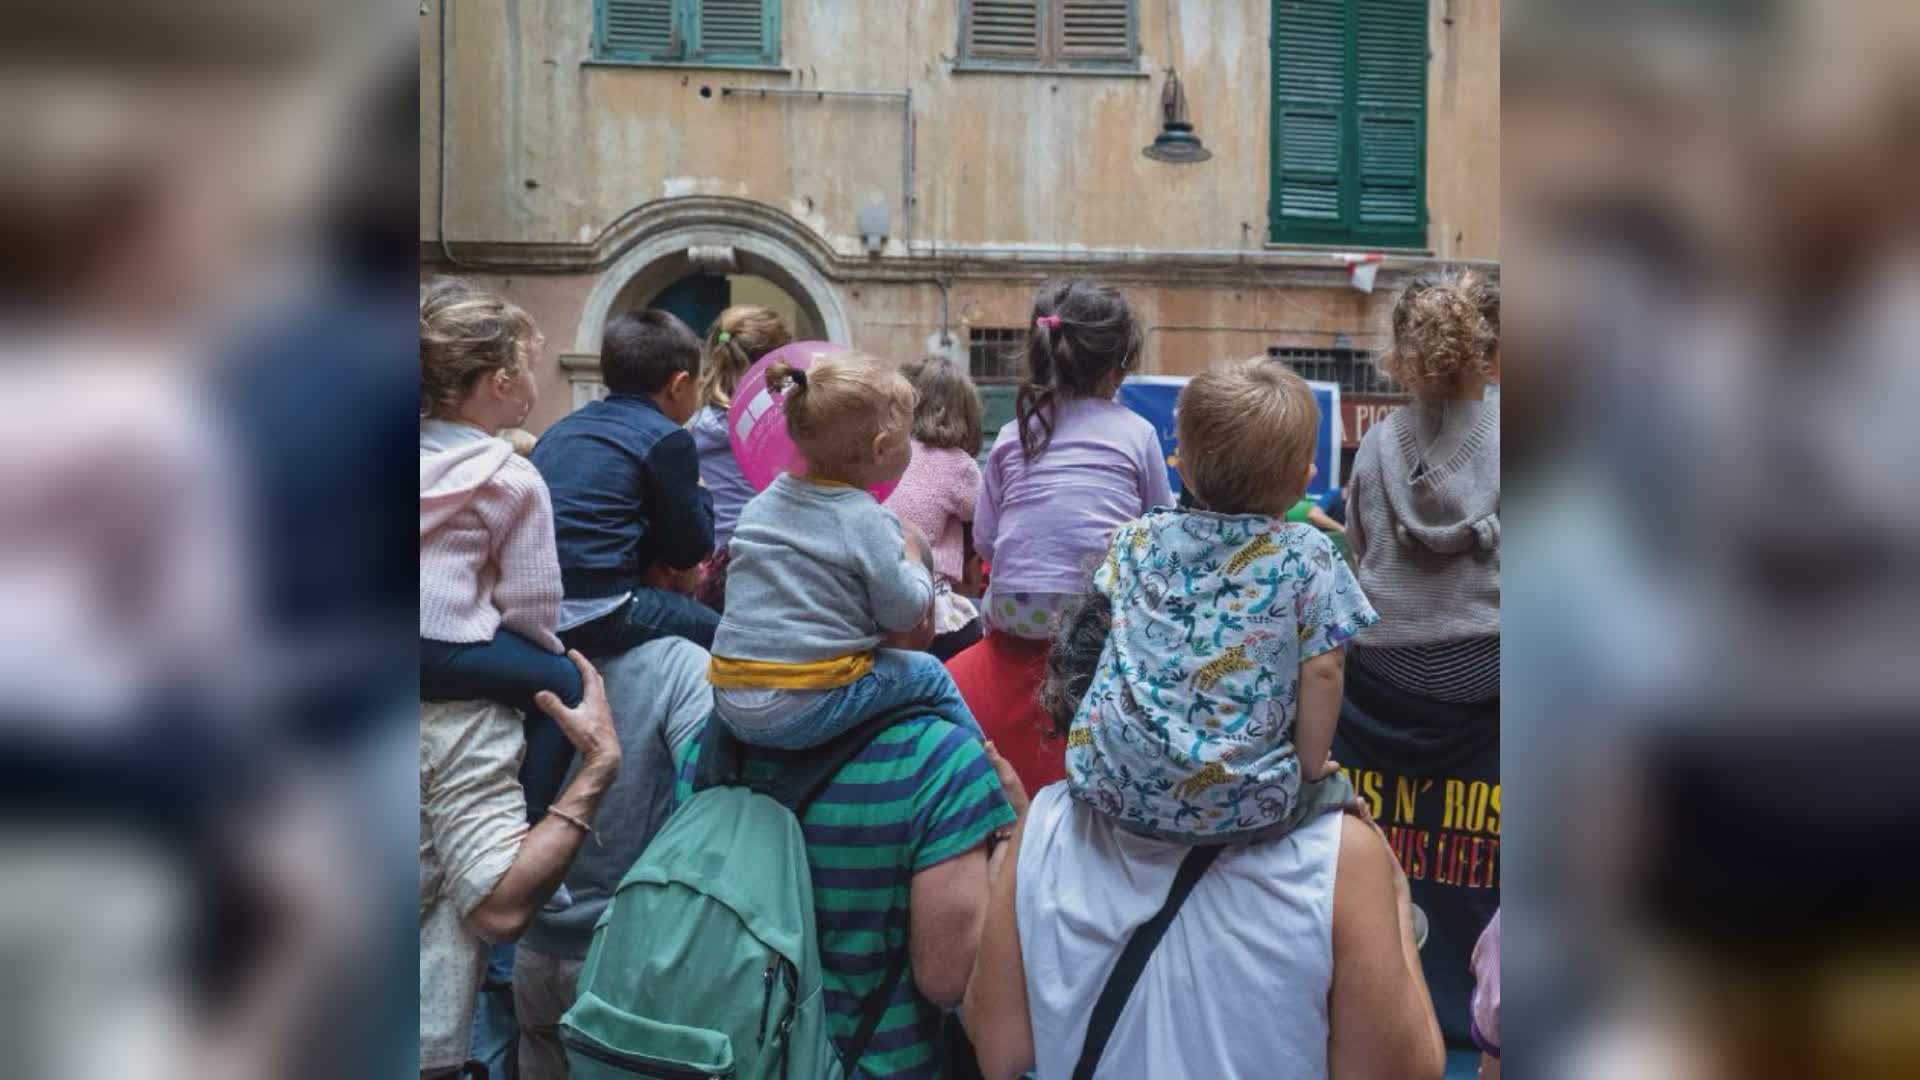 Genova, il 7 ottobre arriva la notte bianca dei bambini nel centro storico